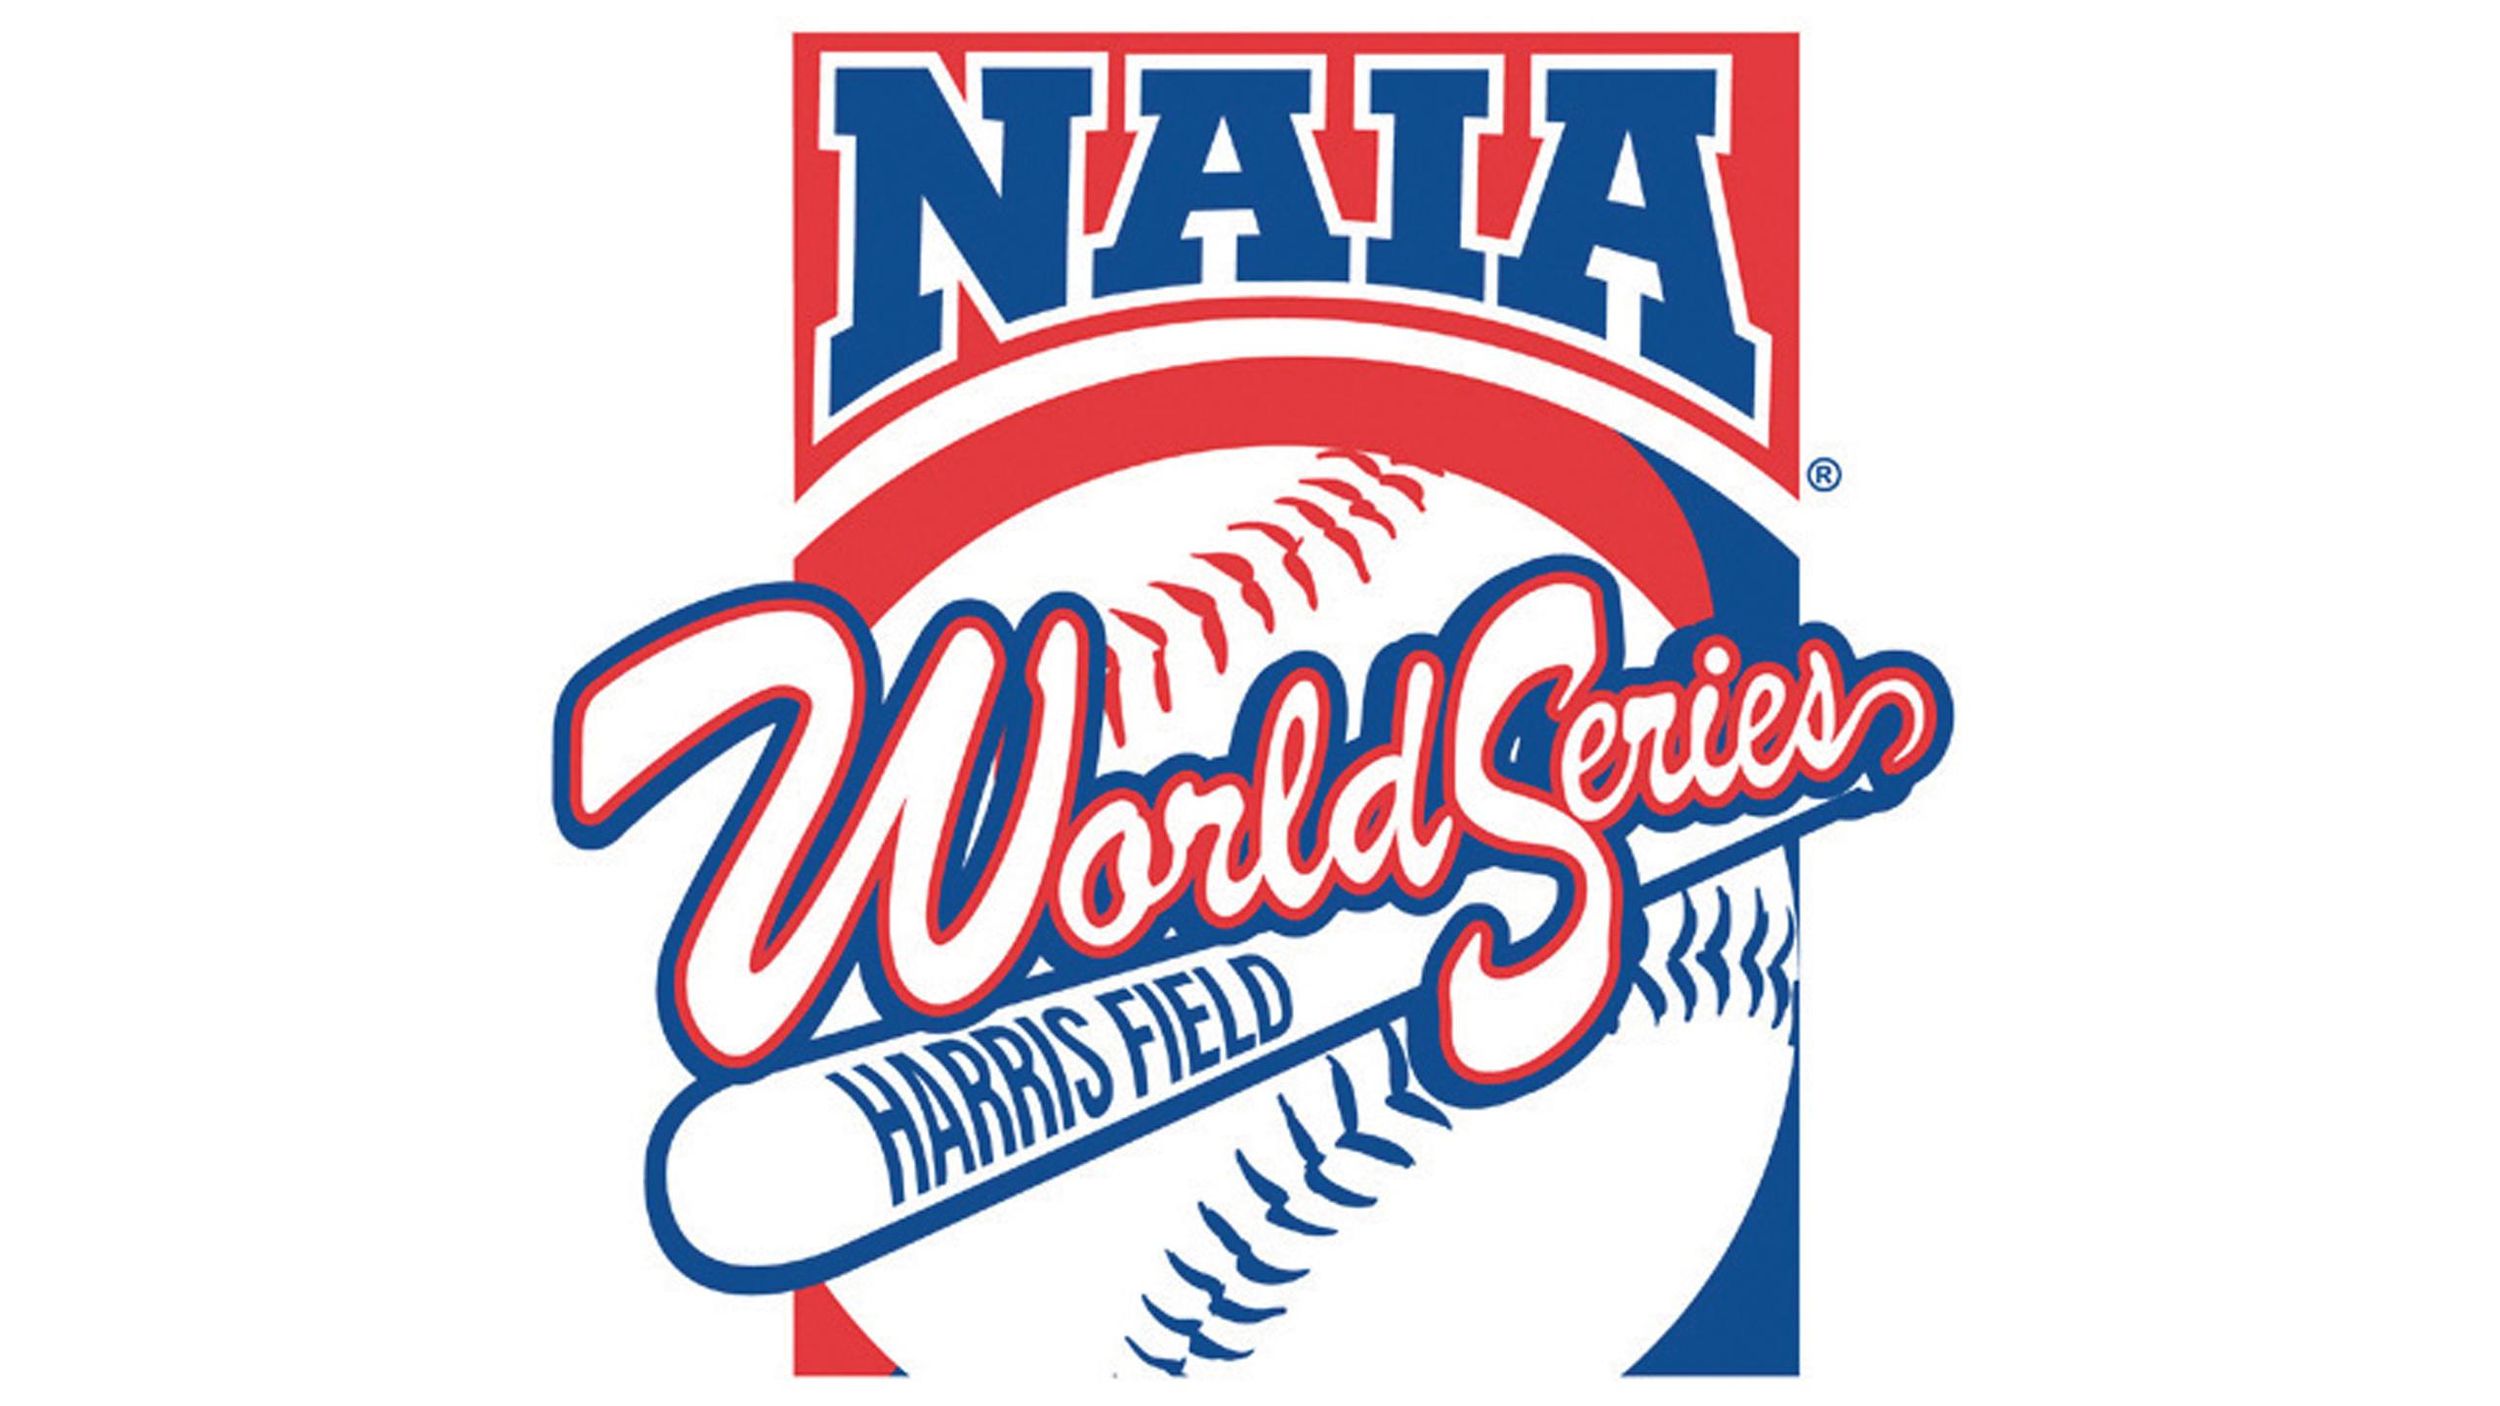 NAIA Baseball World Series to remain in Lewiston through 2024 The